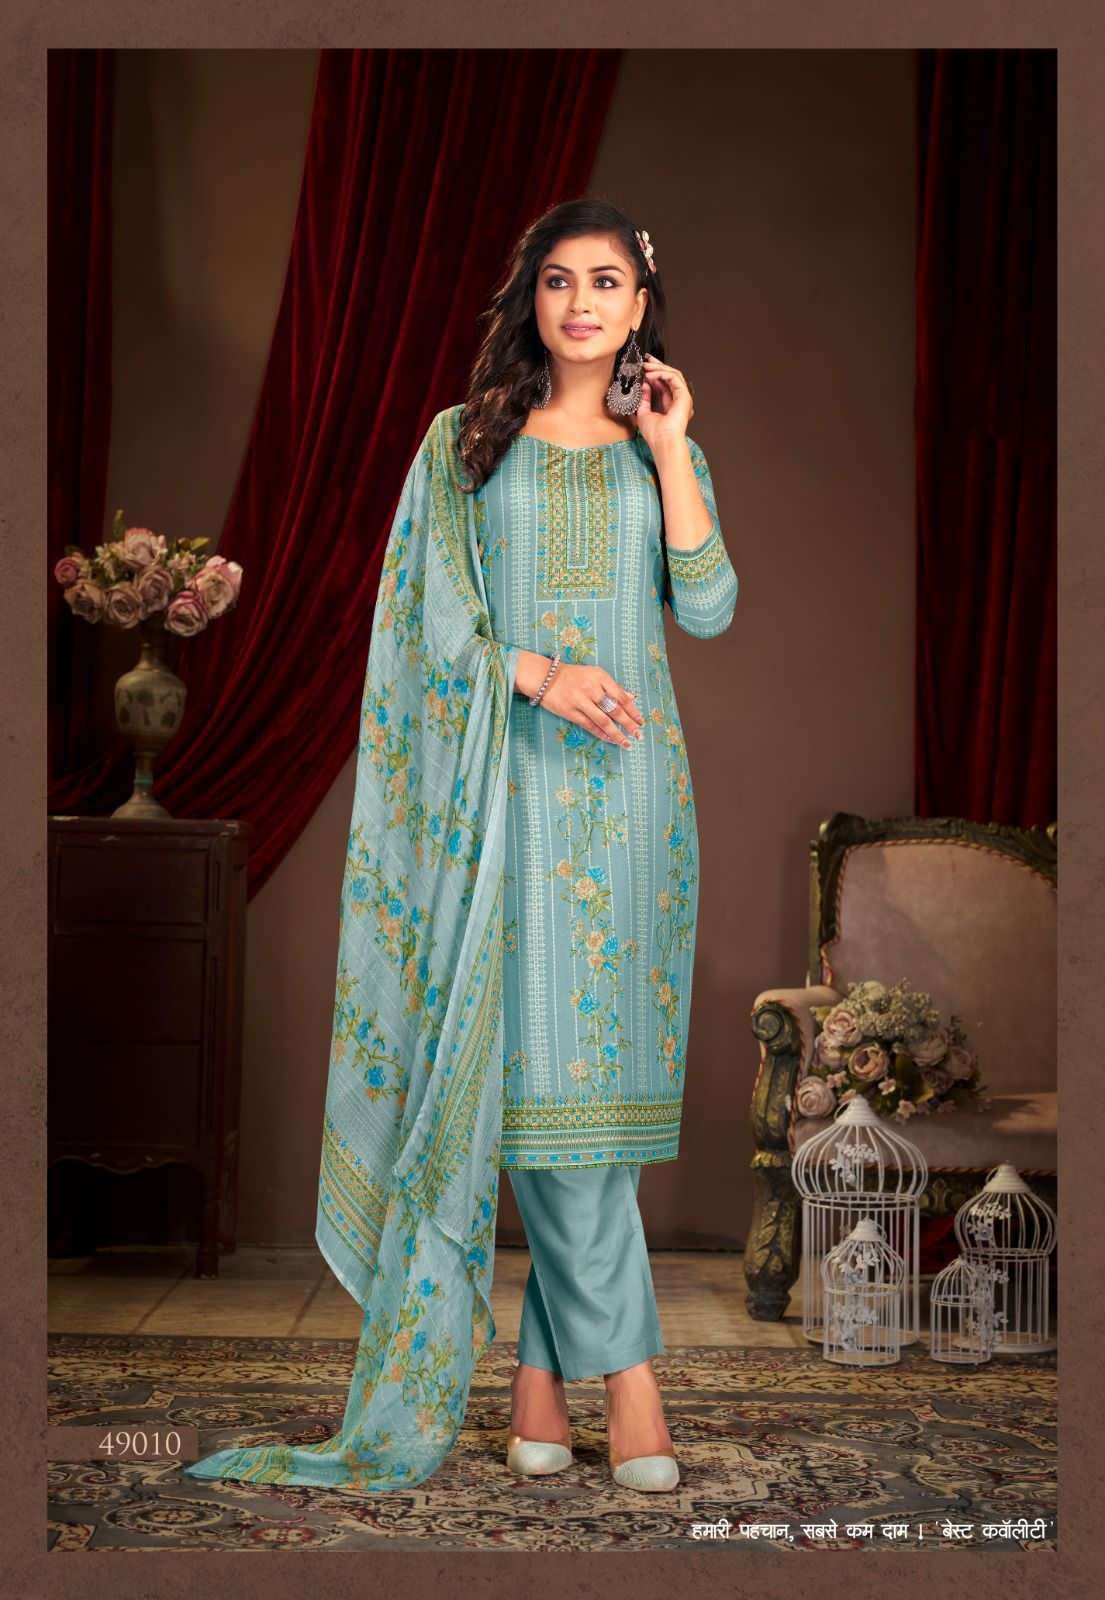 shiv gori silk mills panjabi kudi vol-49 49001-49012 series fancy salwar kameez wholesaler surat gujarat